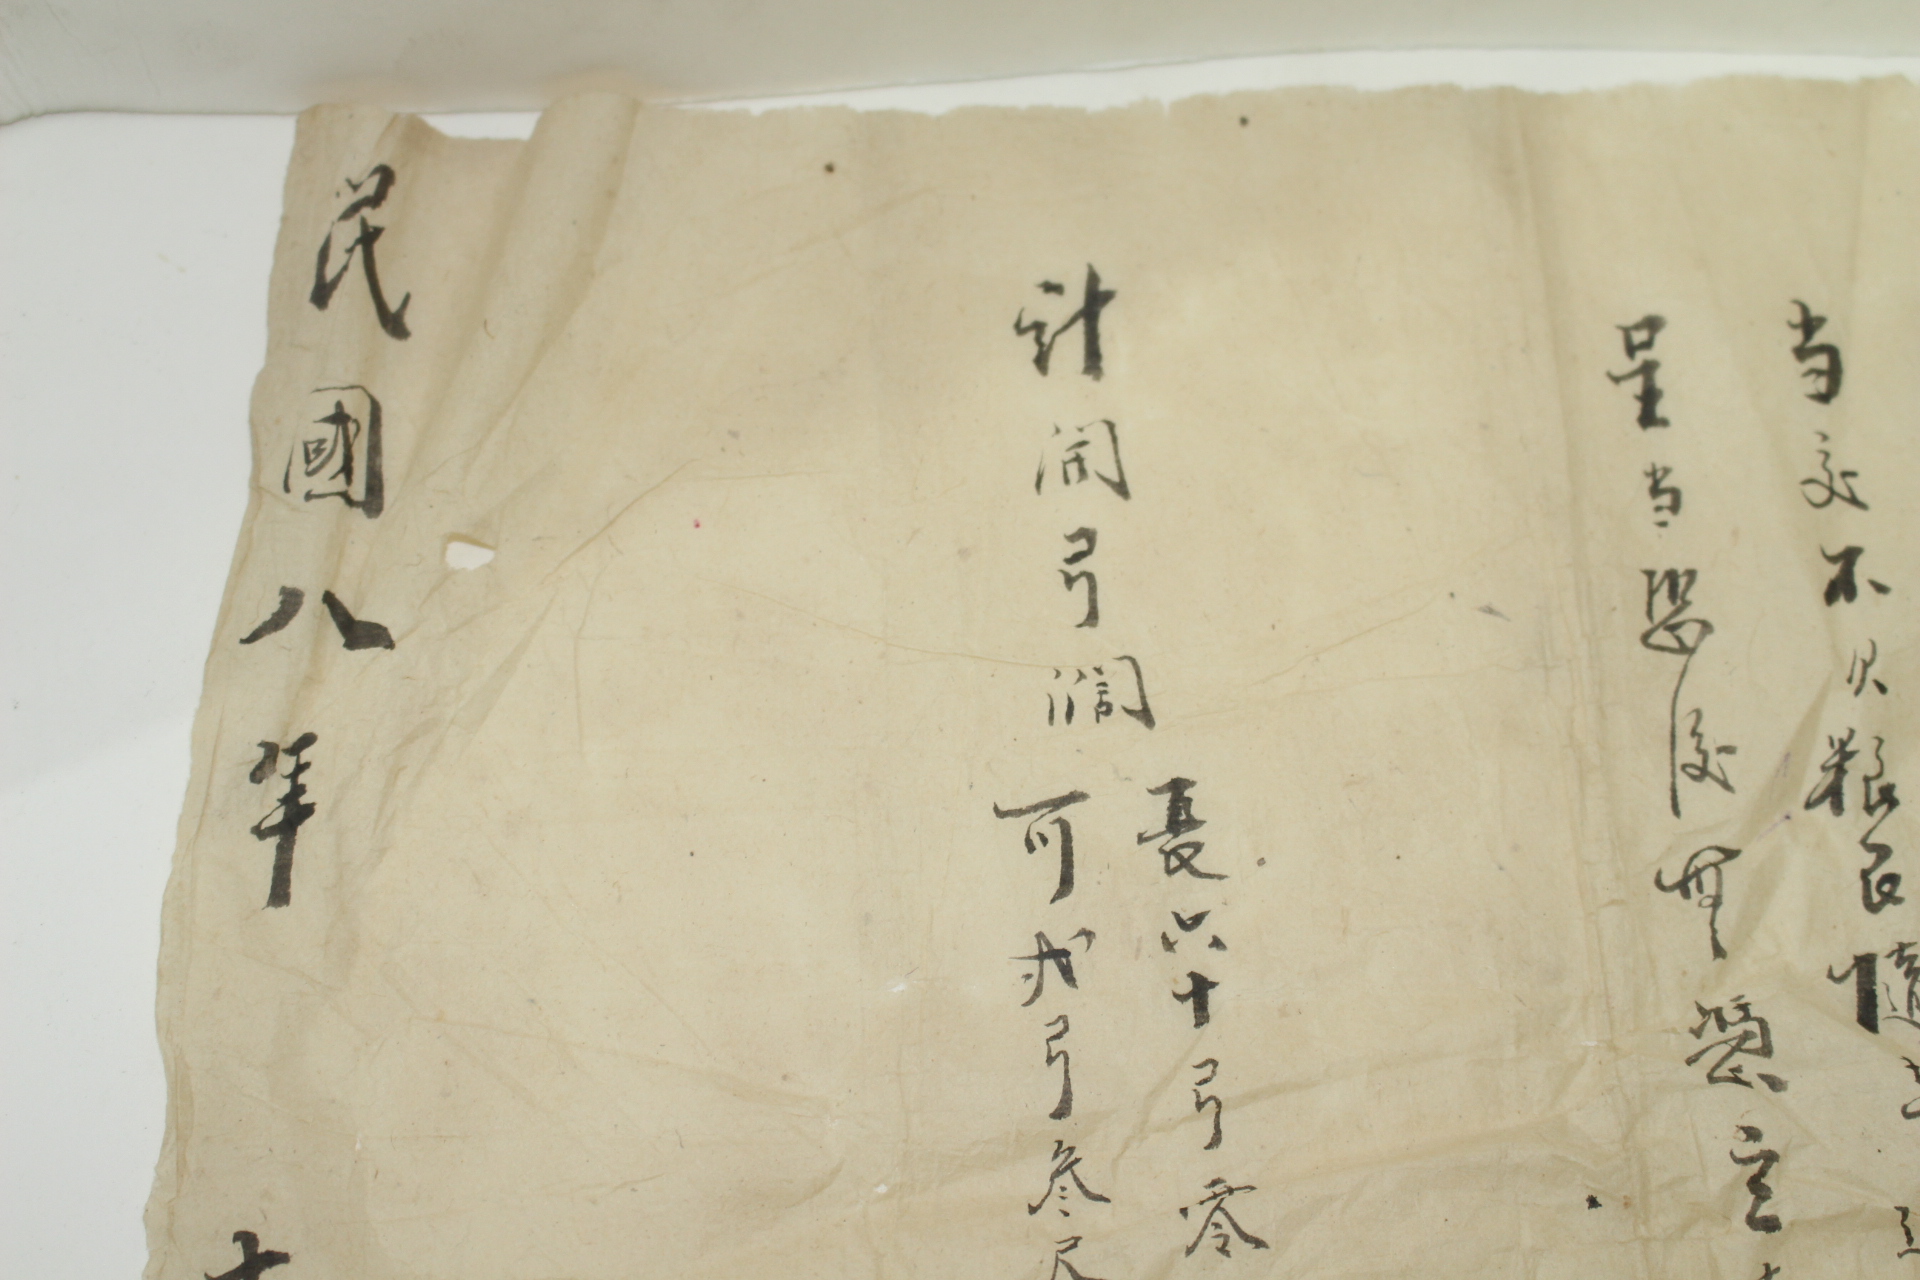 1919년(민국8년) 중국문서